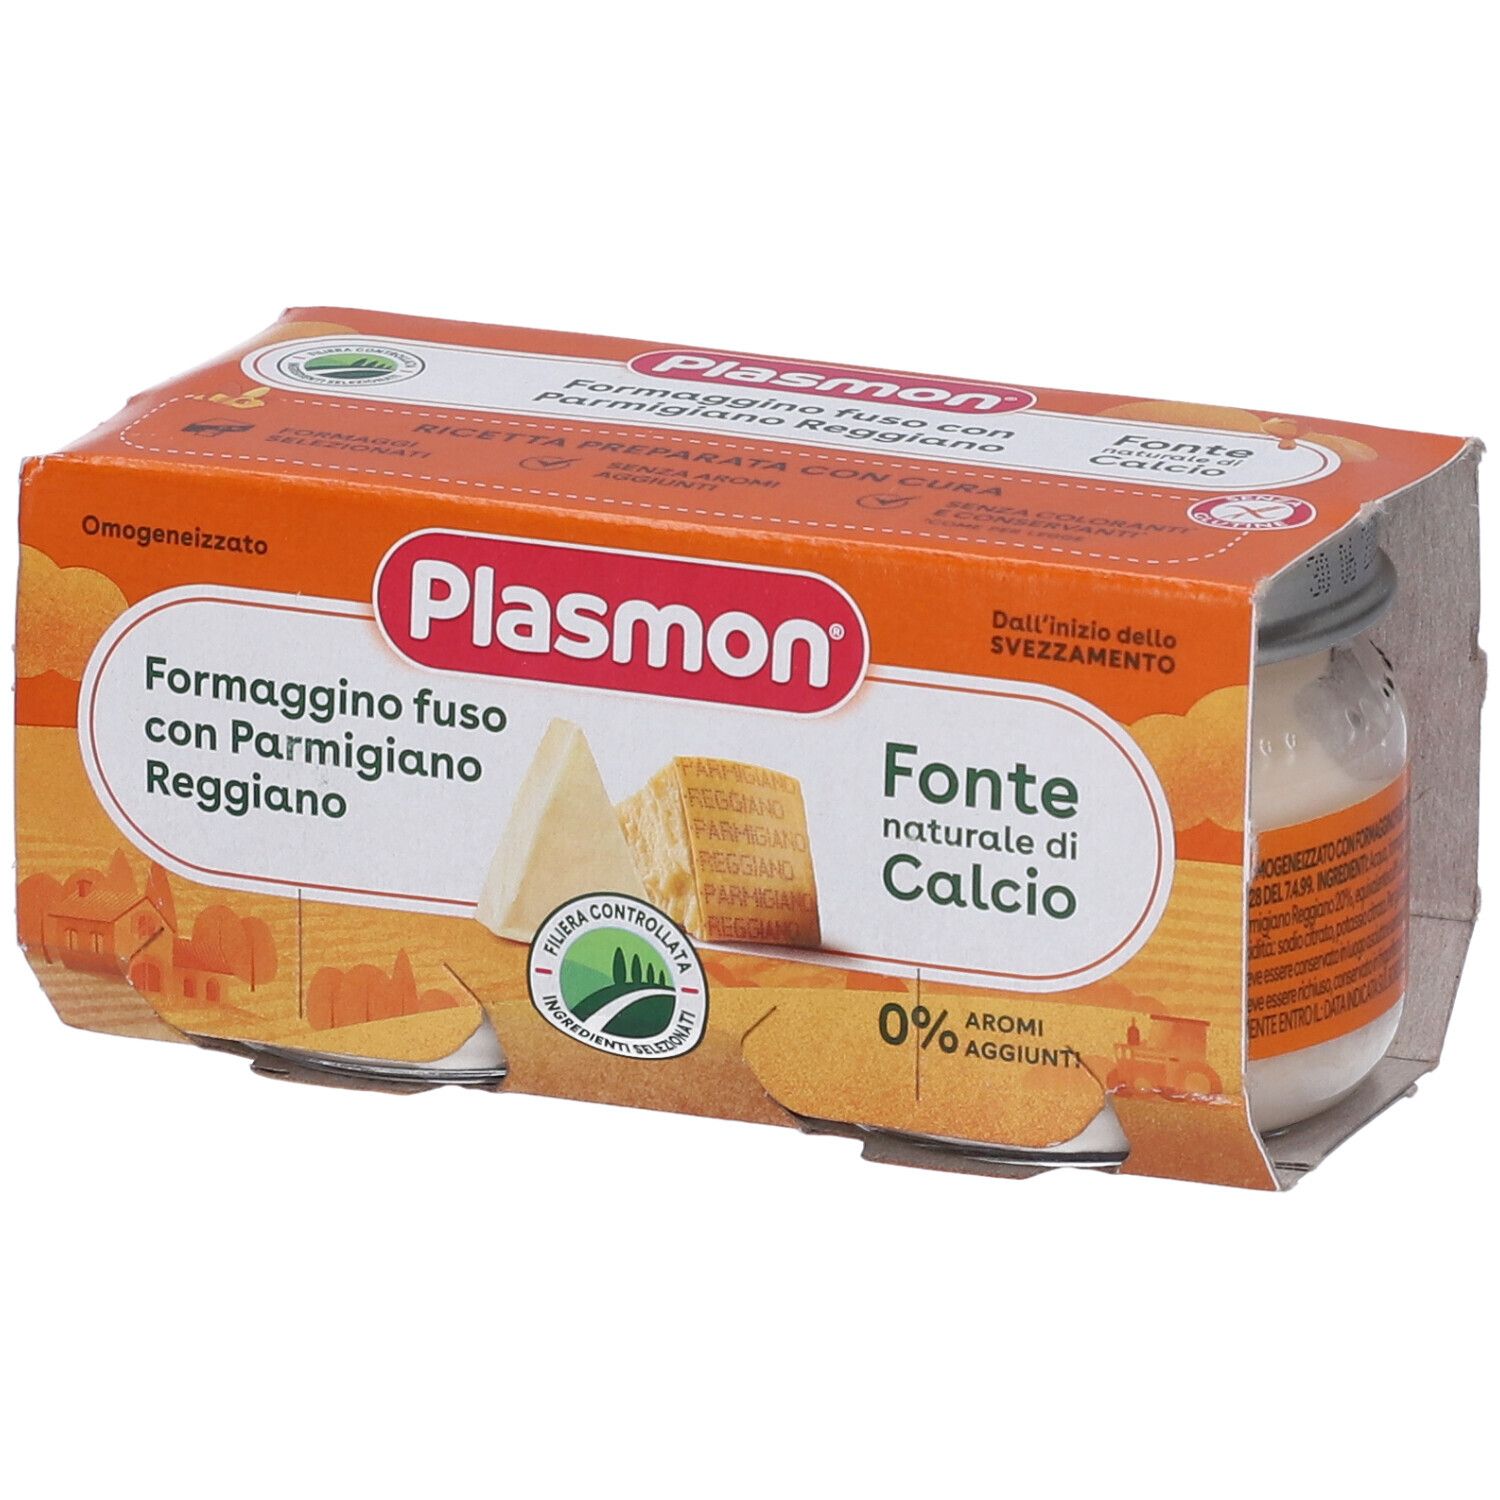 Image of Plasmon® Omogeneizzato Formaggino fuso e Parmigiano Reggiano